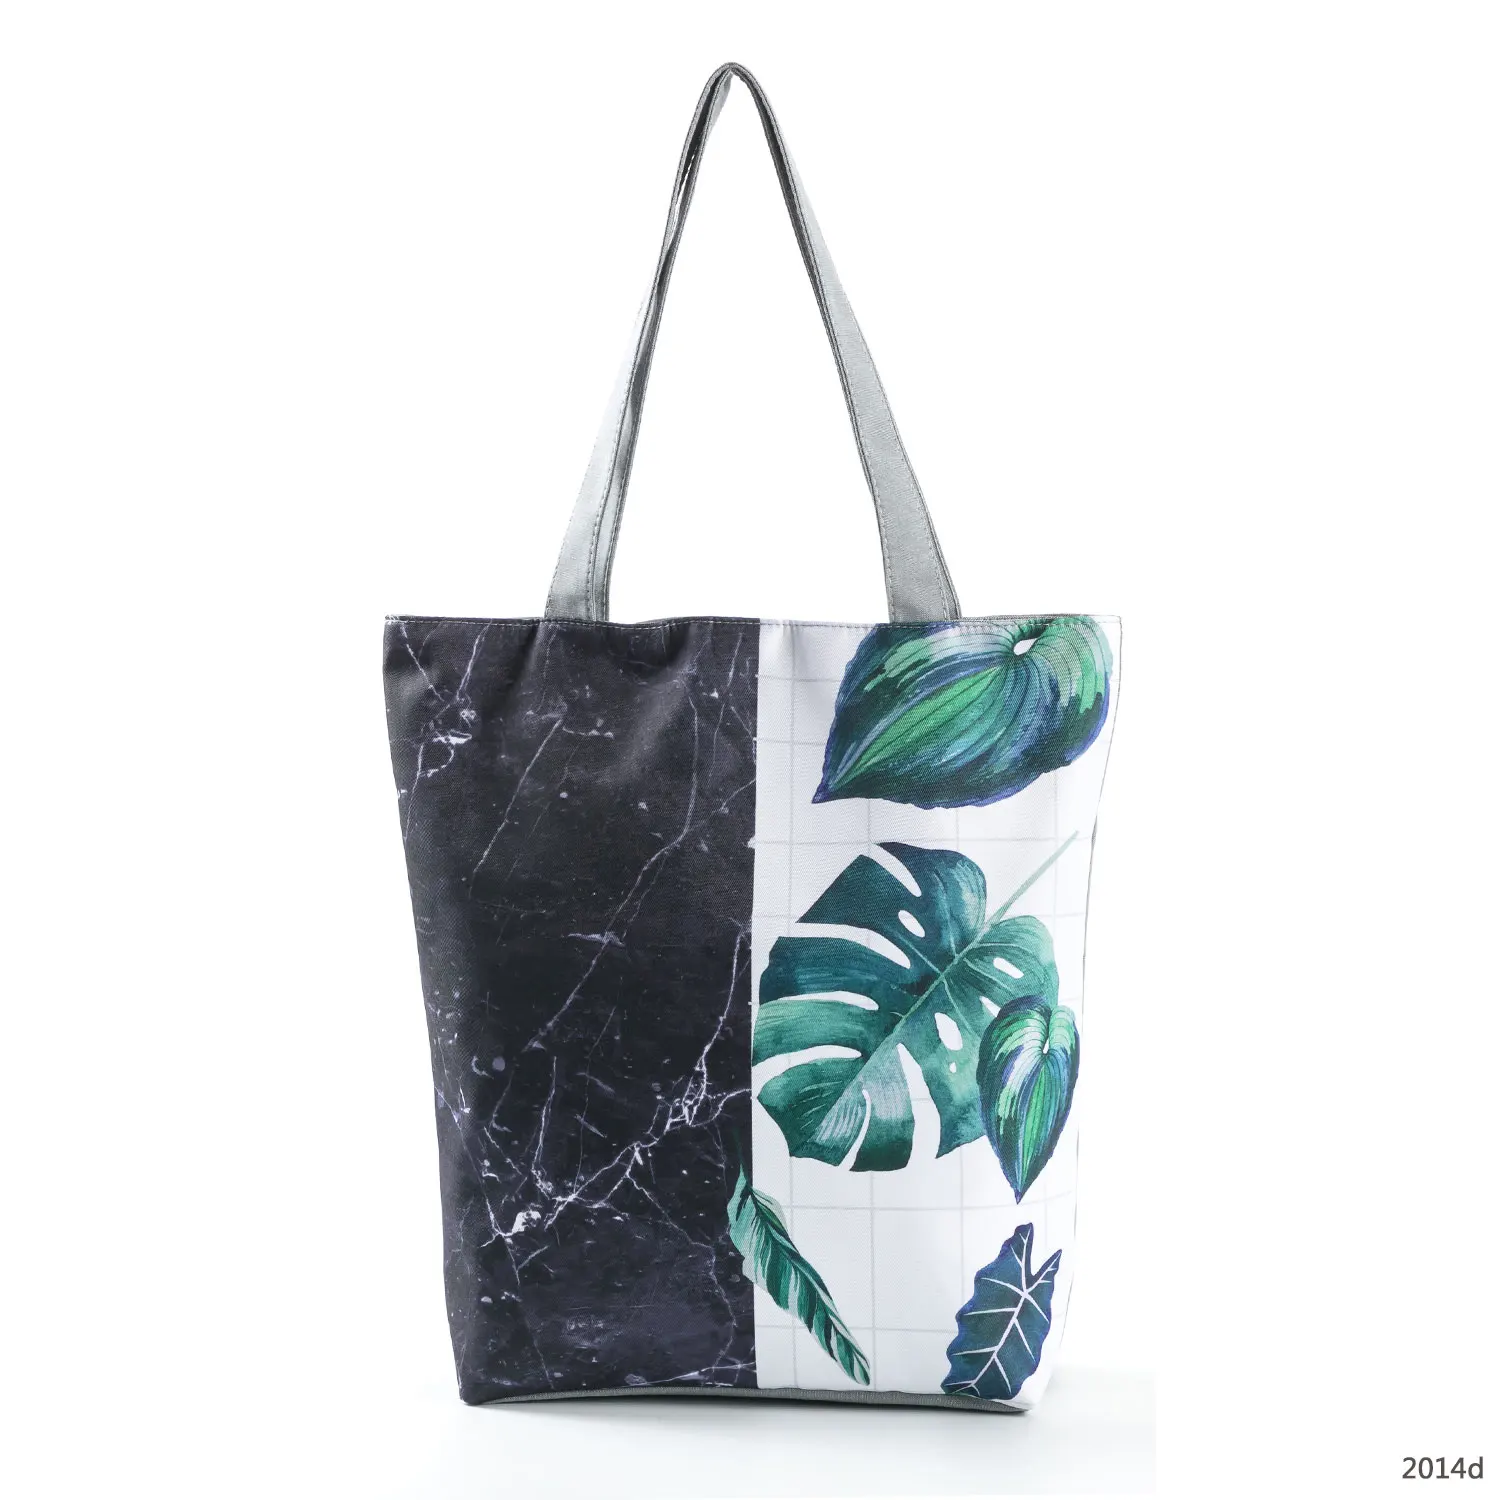 

Сумки с принтом листьев, Экологически чистая женская сумка для покупок Вместительная сумка-тоут через плечо с черным мраморным рисунком, по...